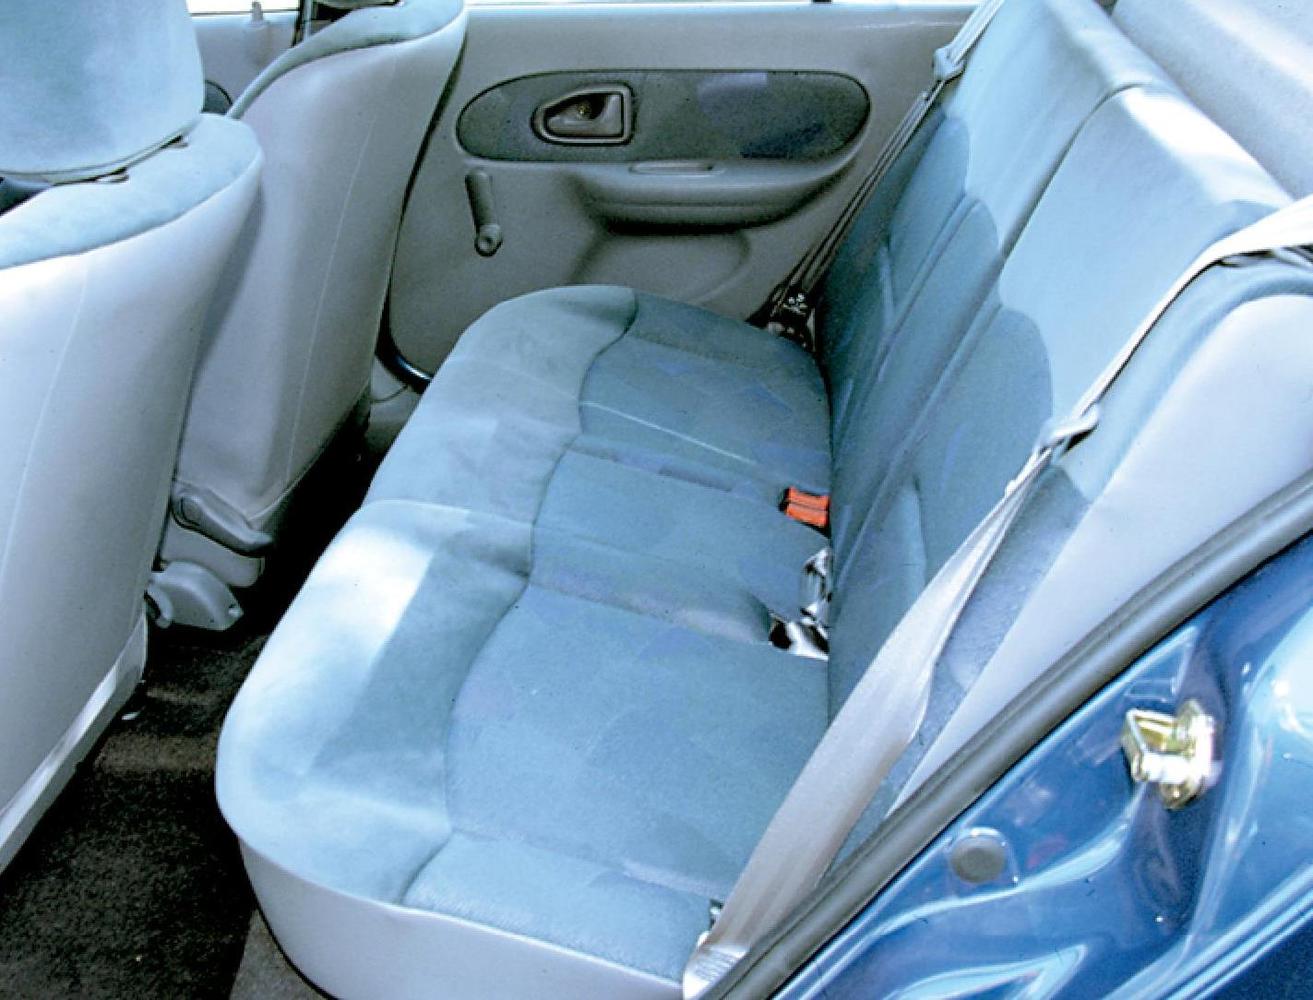 хэтчбек 3 дв. Renault Clio 1998 - 2001г выпуска модификация 1.1 AT (75 л.с.)